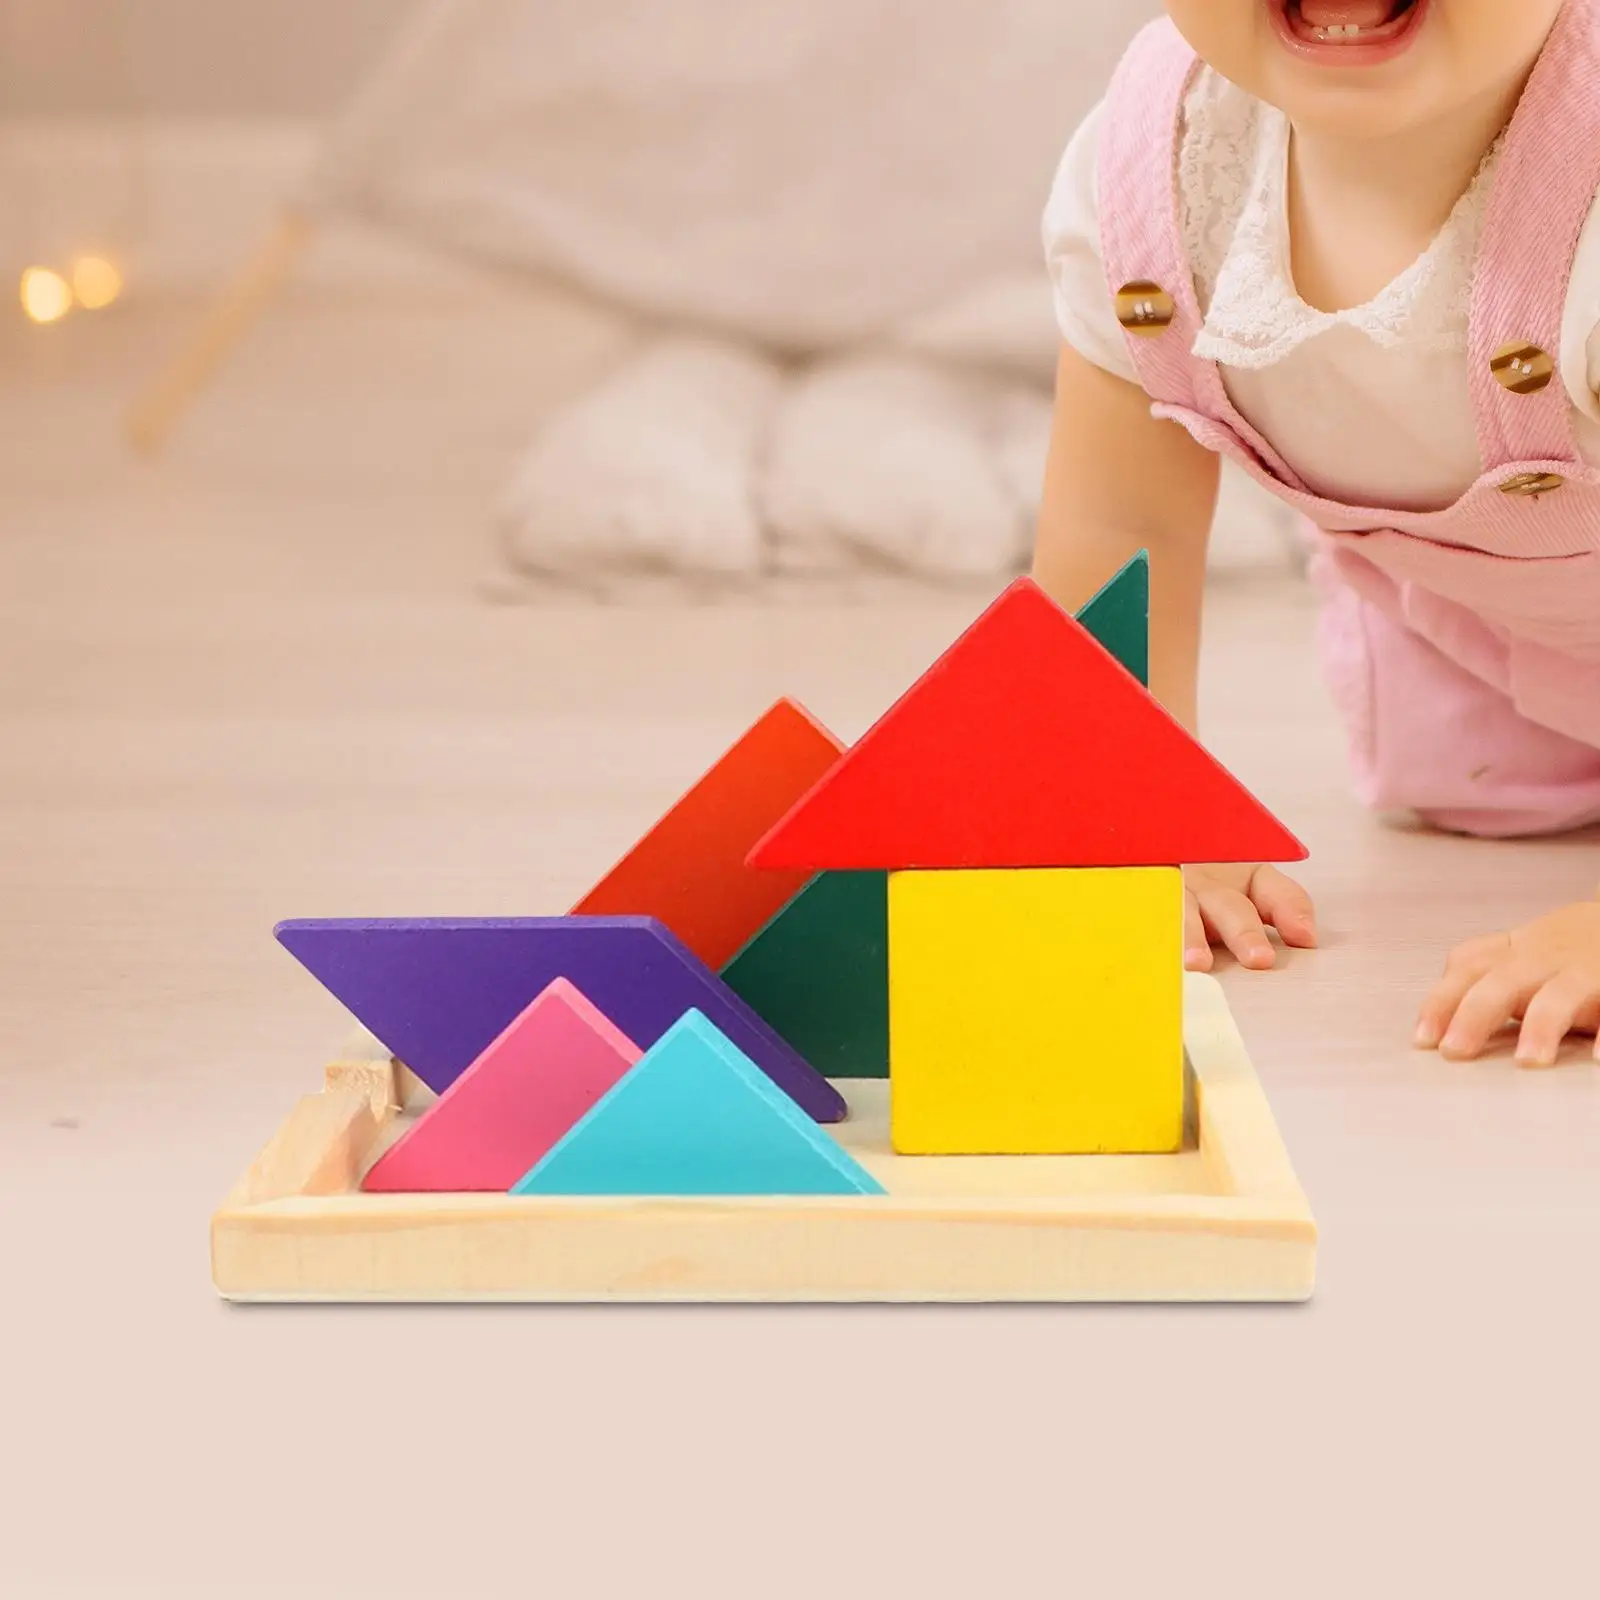 

Пазлы геометрической формы с деревянными стеблями для детей дошкольного возраста 4-8 лет